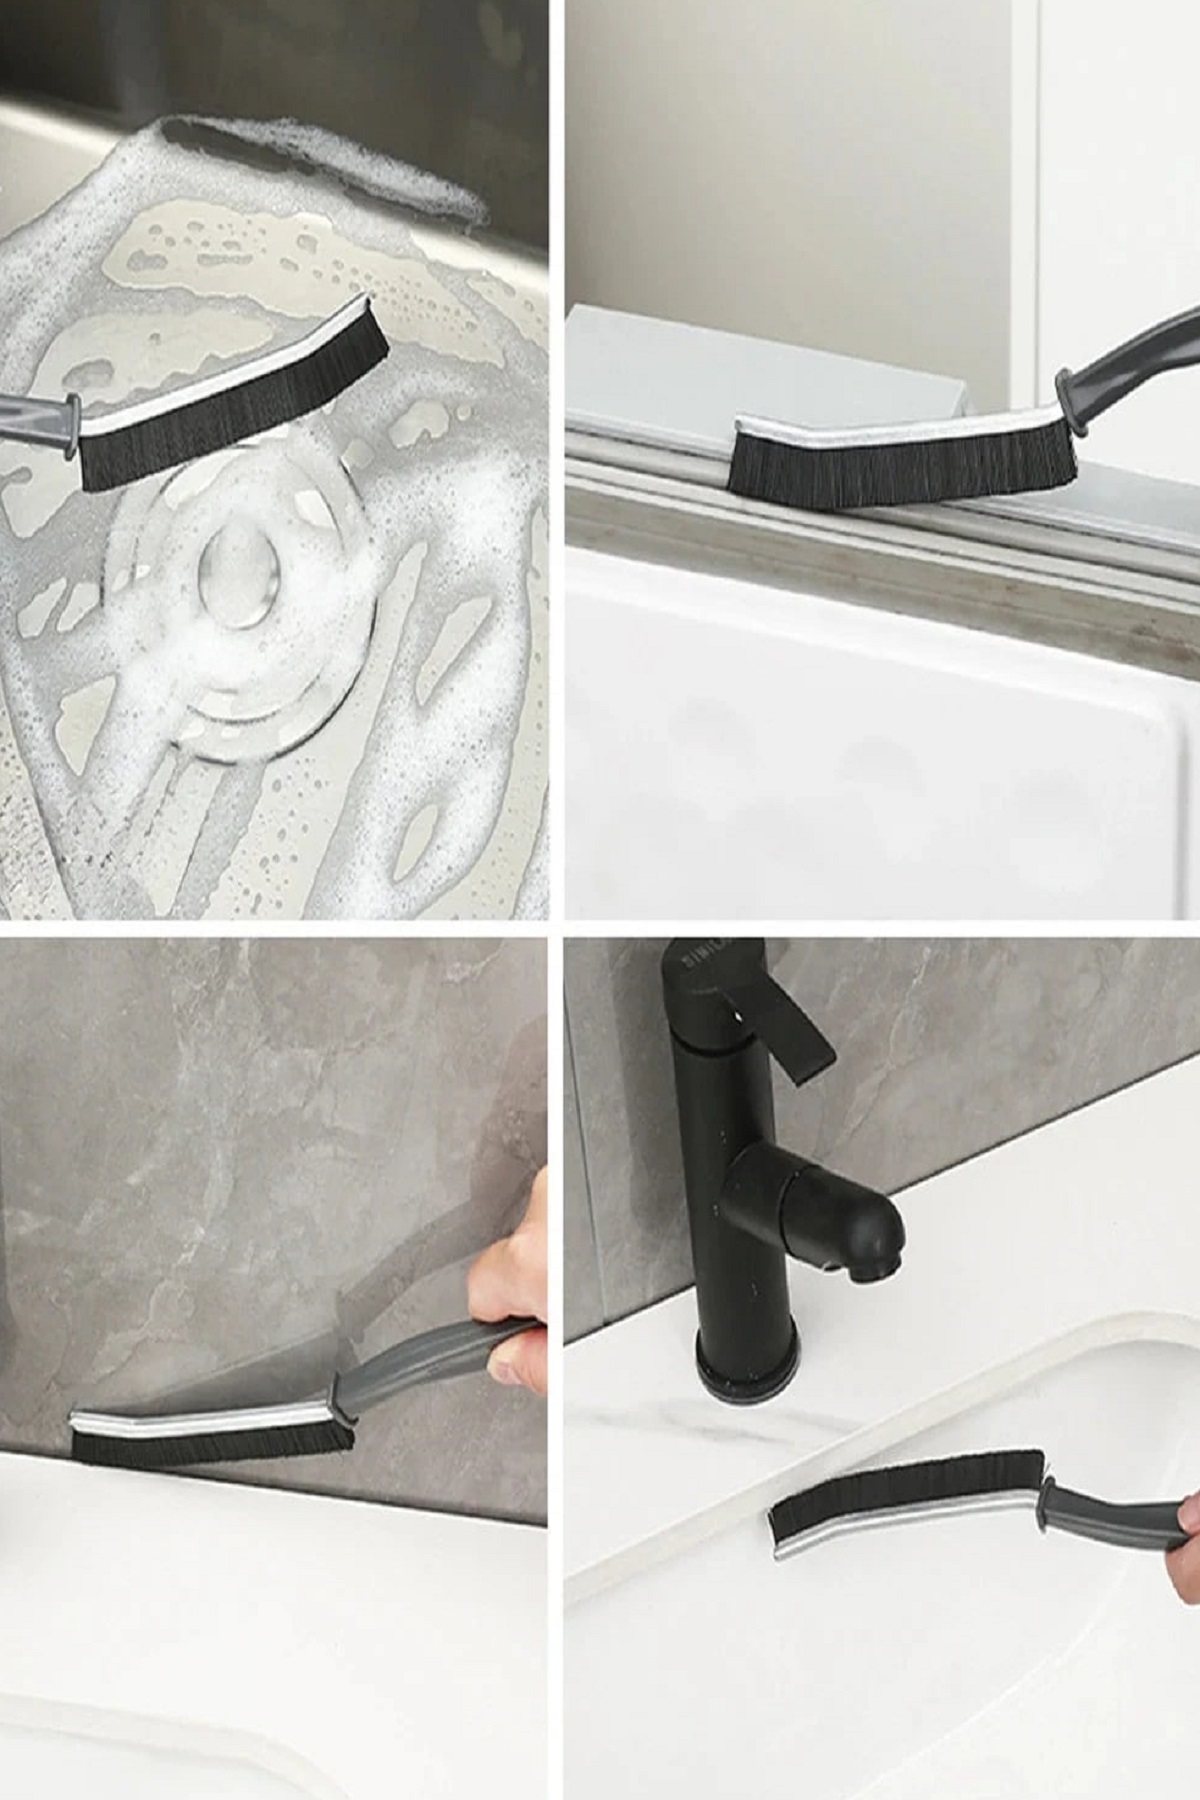 CLZ174 İnce Kıl Temizlik Fırçası Banyo Mutfak Pencere Oluk Klozet Kenarı Kavisli Detay Temizleme Fırçası